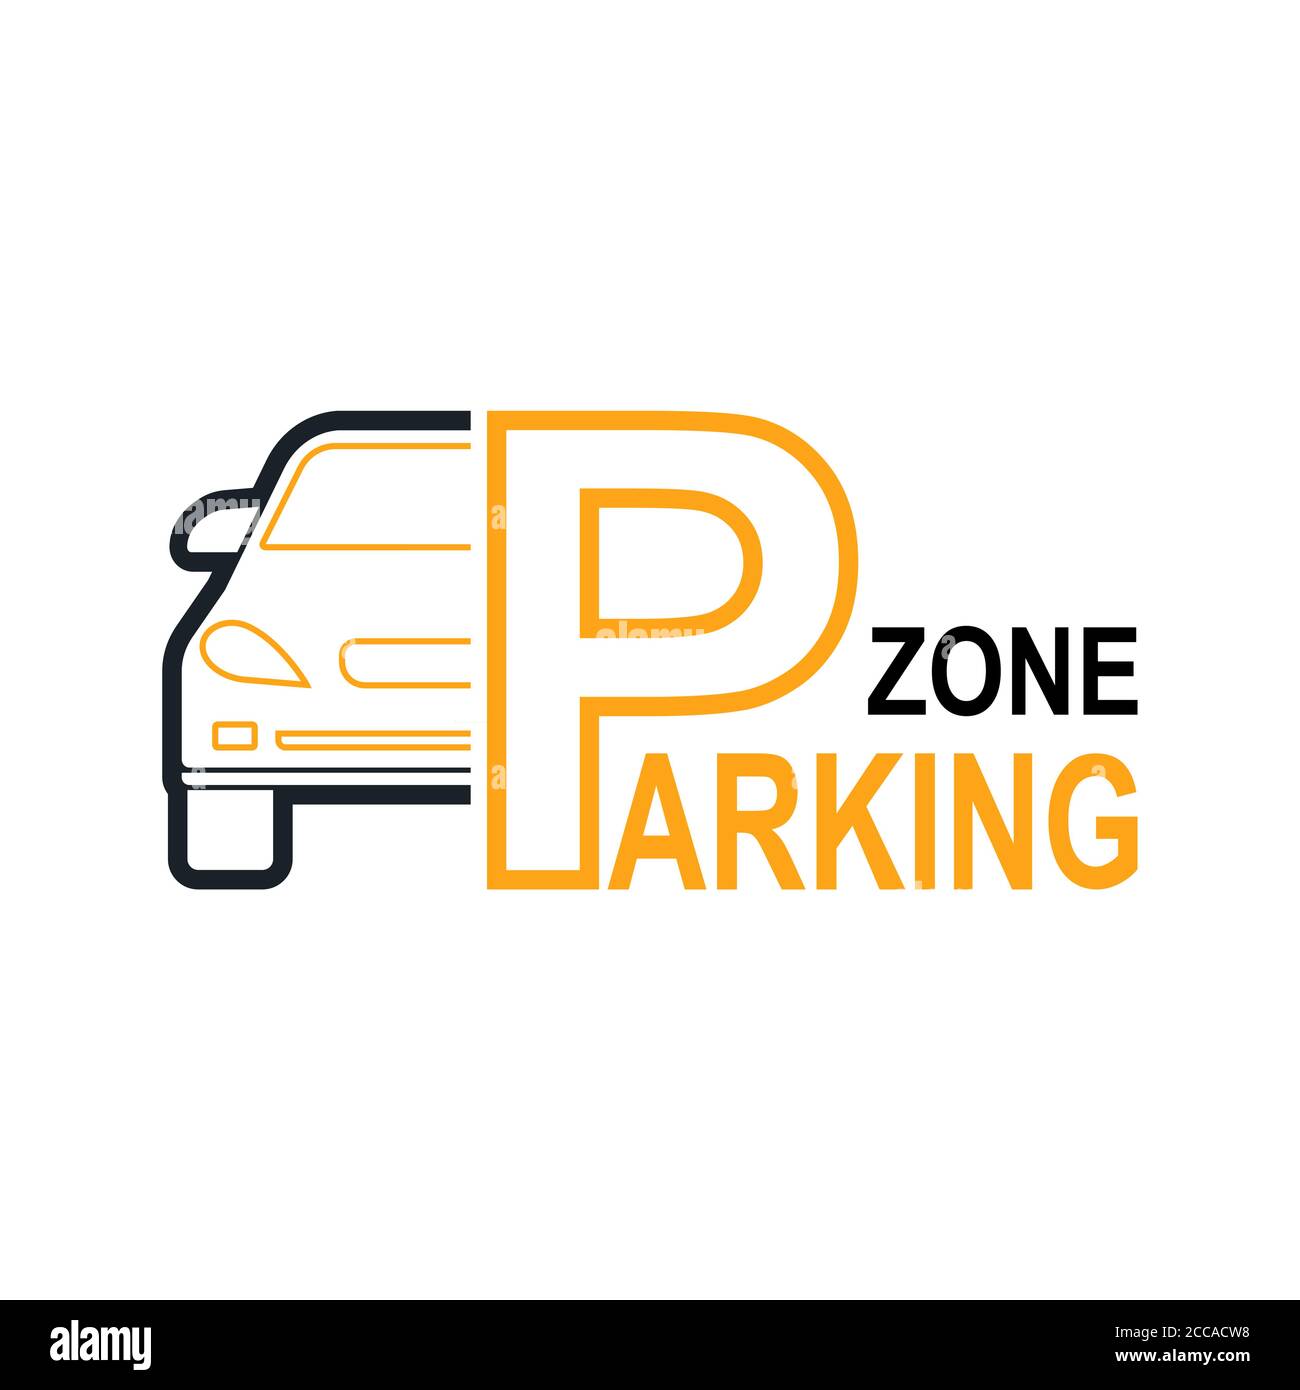 Zusammenfassung Hintergrund mit Autos und Verkehrszeichen. Parkplatz Zone. Vektor Element der grafischen Gestaltung. Flat Style. Stock Vektor